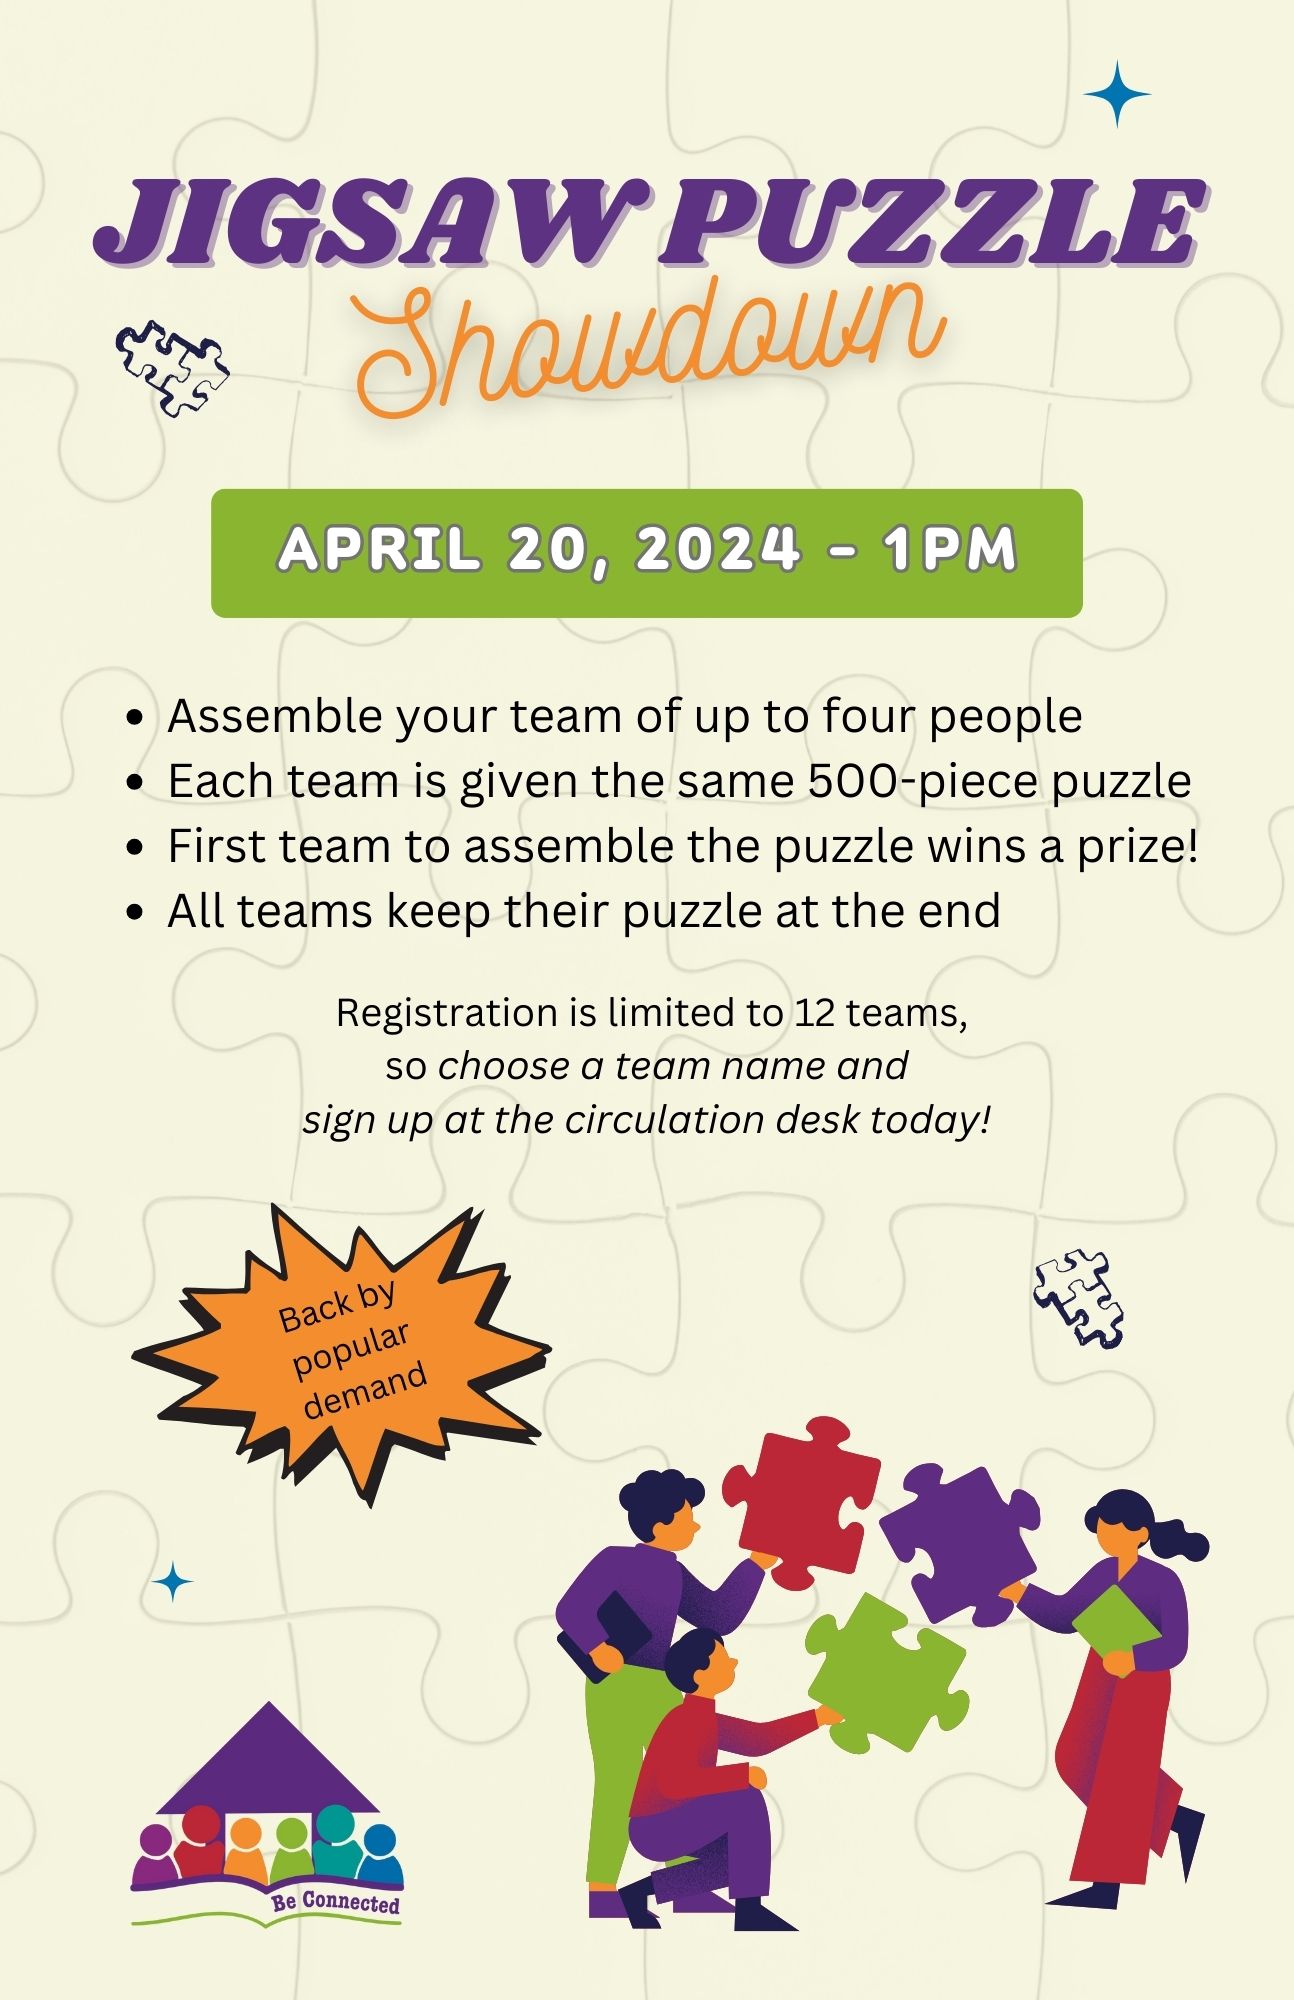 jigsaw puzzle showdown flyer